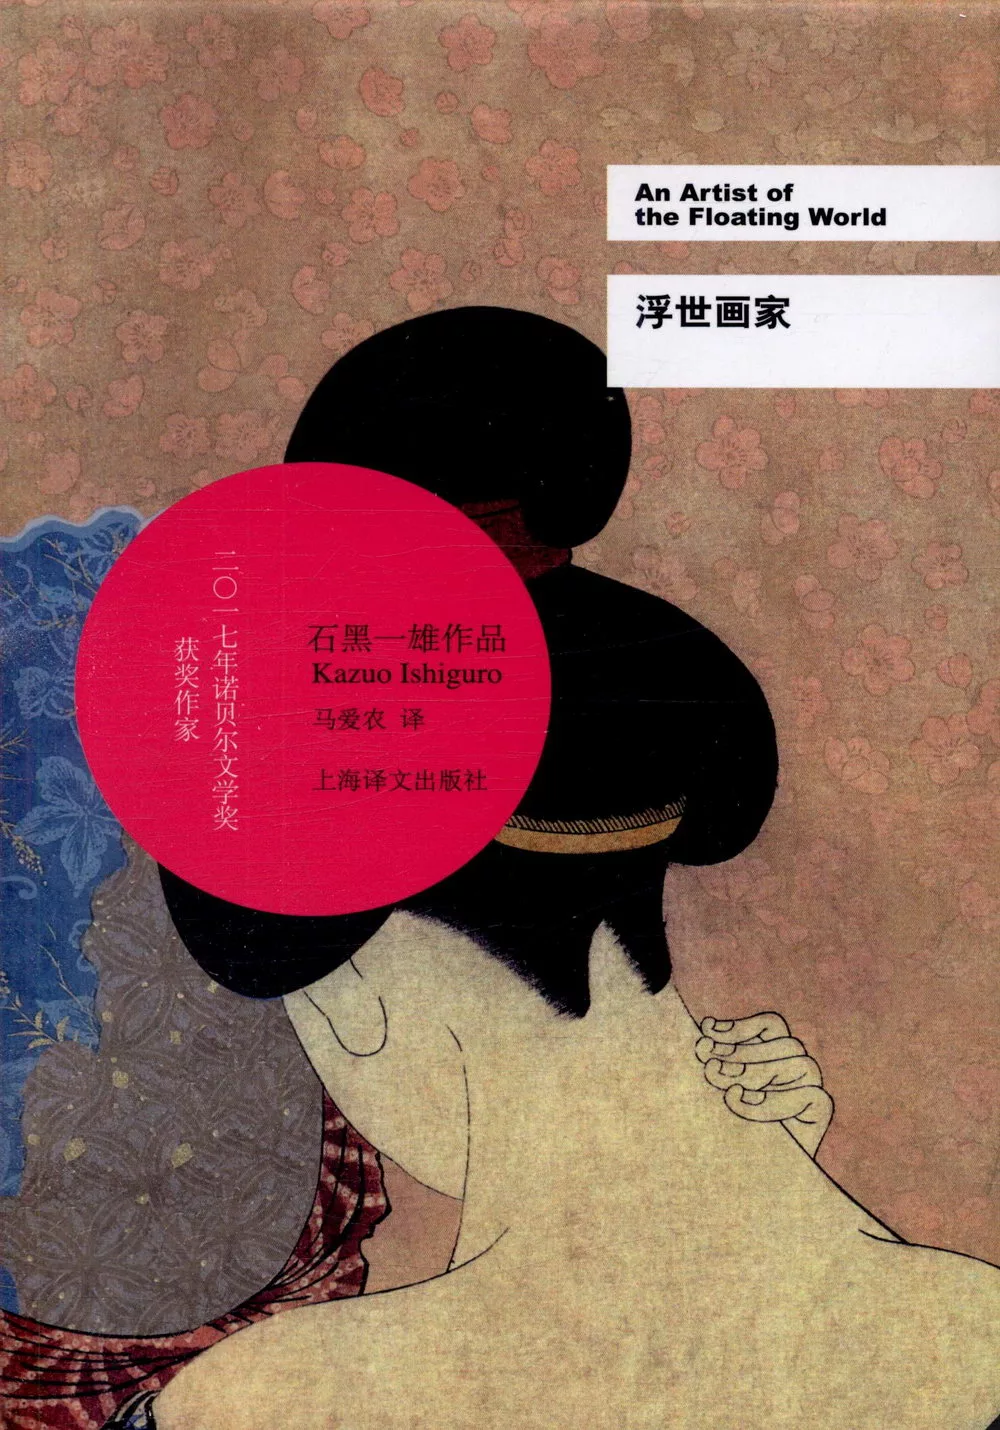 石黑一雄（Kazuo Ishiguro）文集 : 浮世畫家